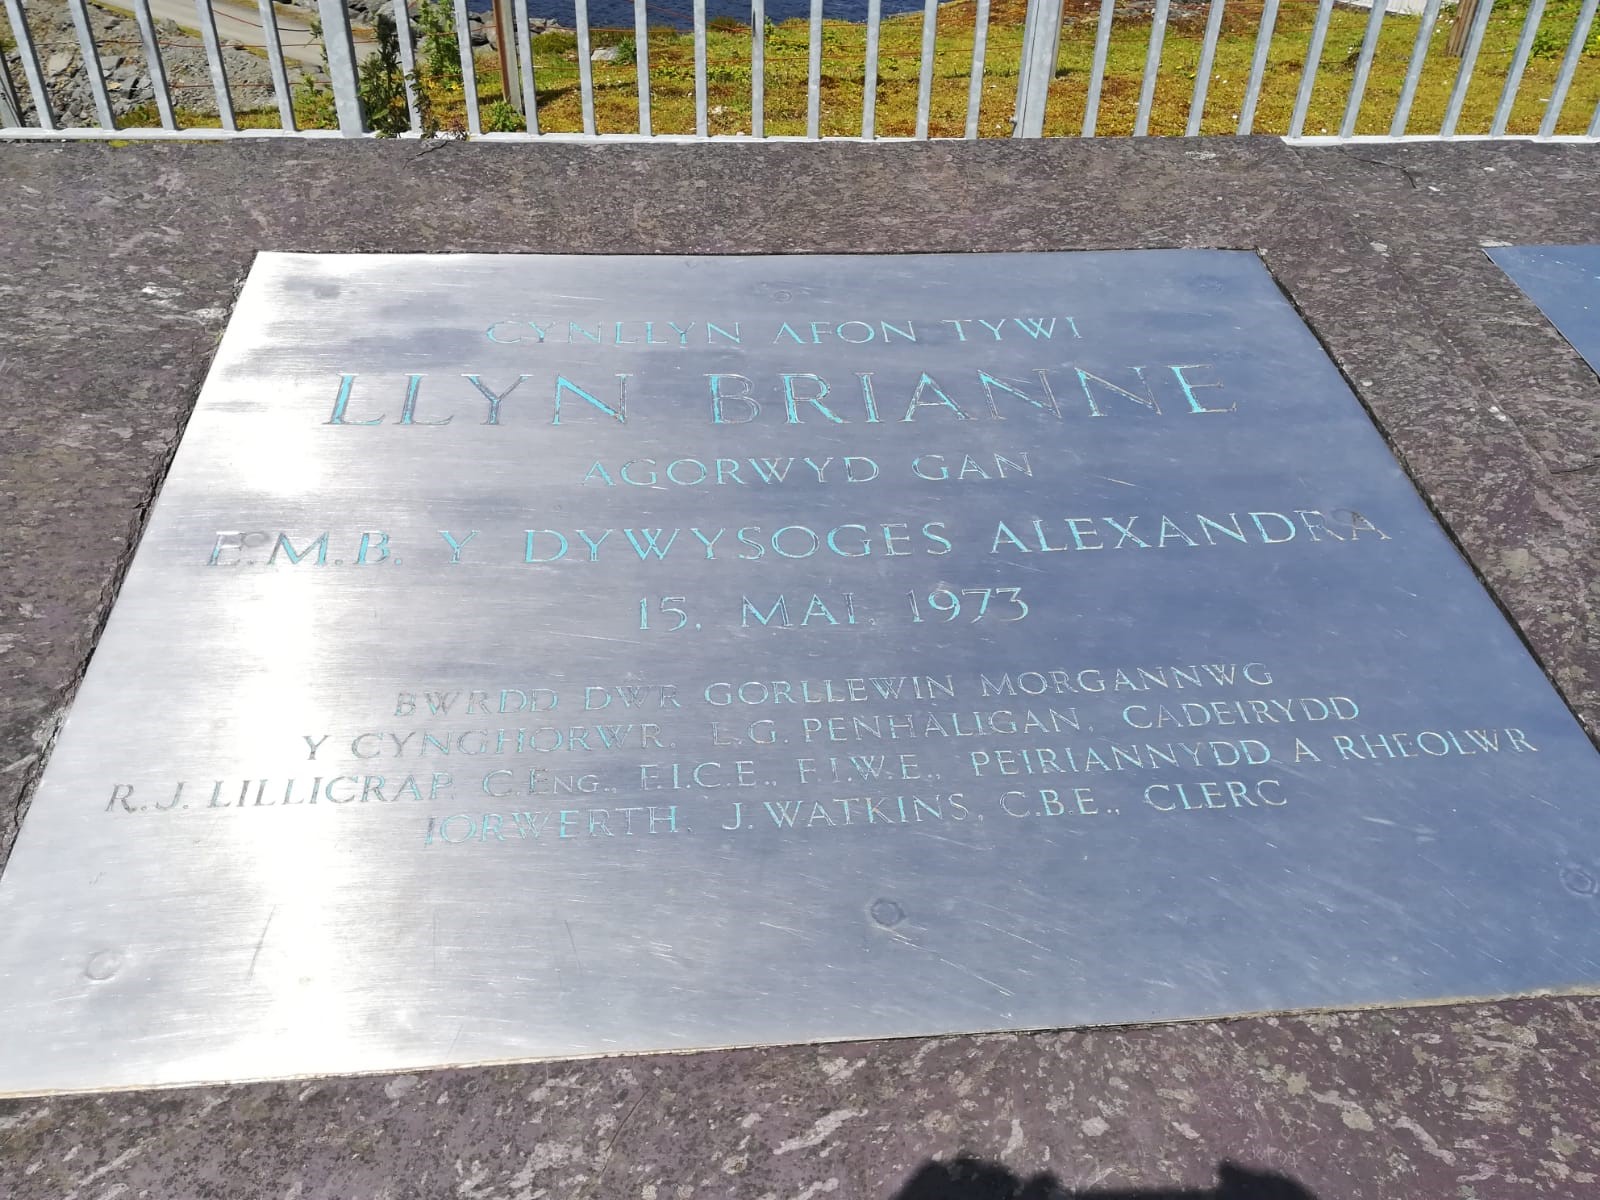 Llyn Brianne Name Plate